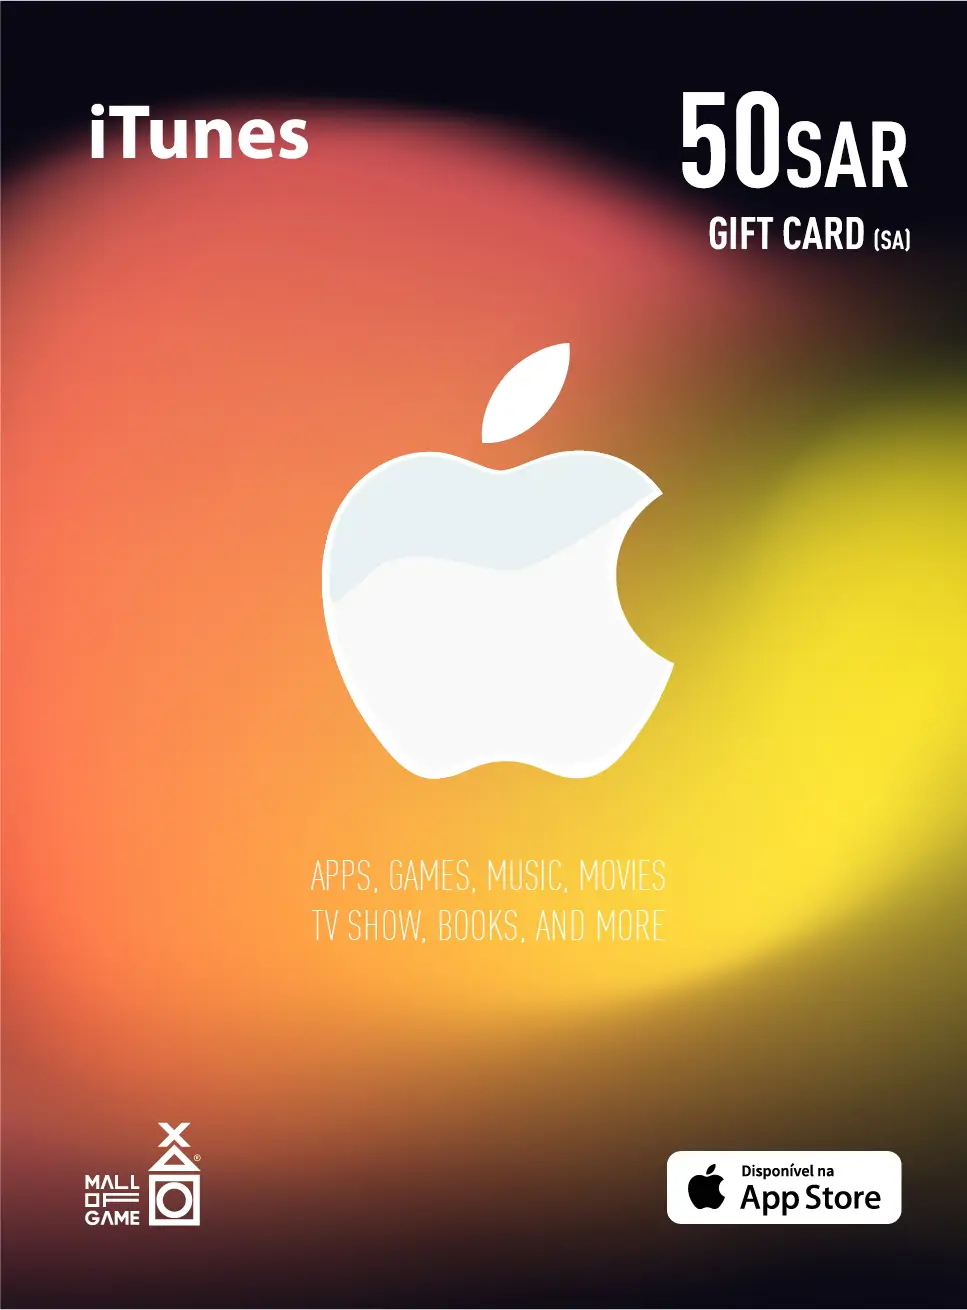 iTunes SAR50 Gift Card (SA)